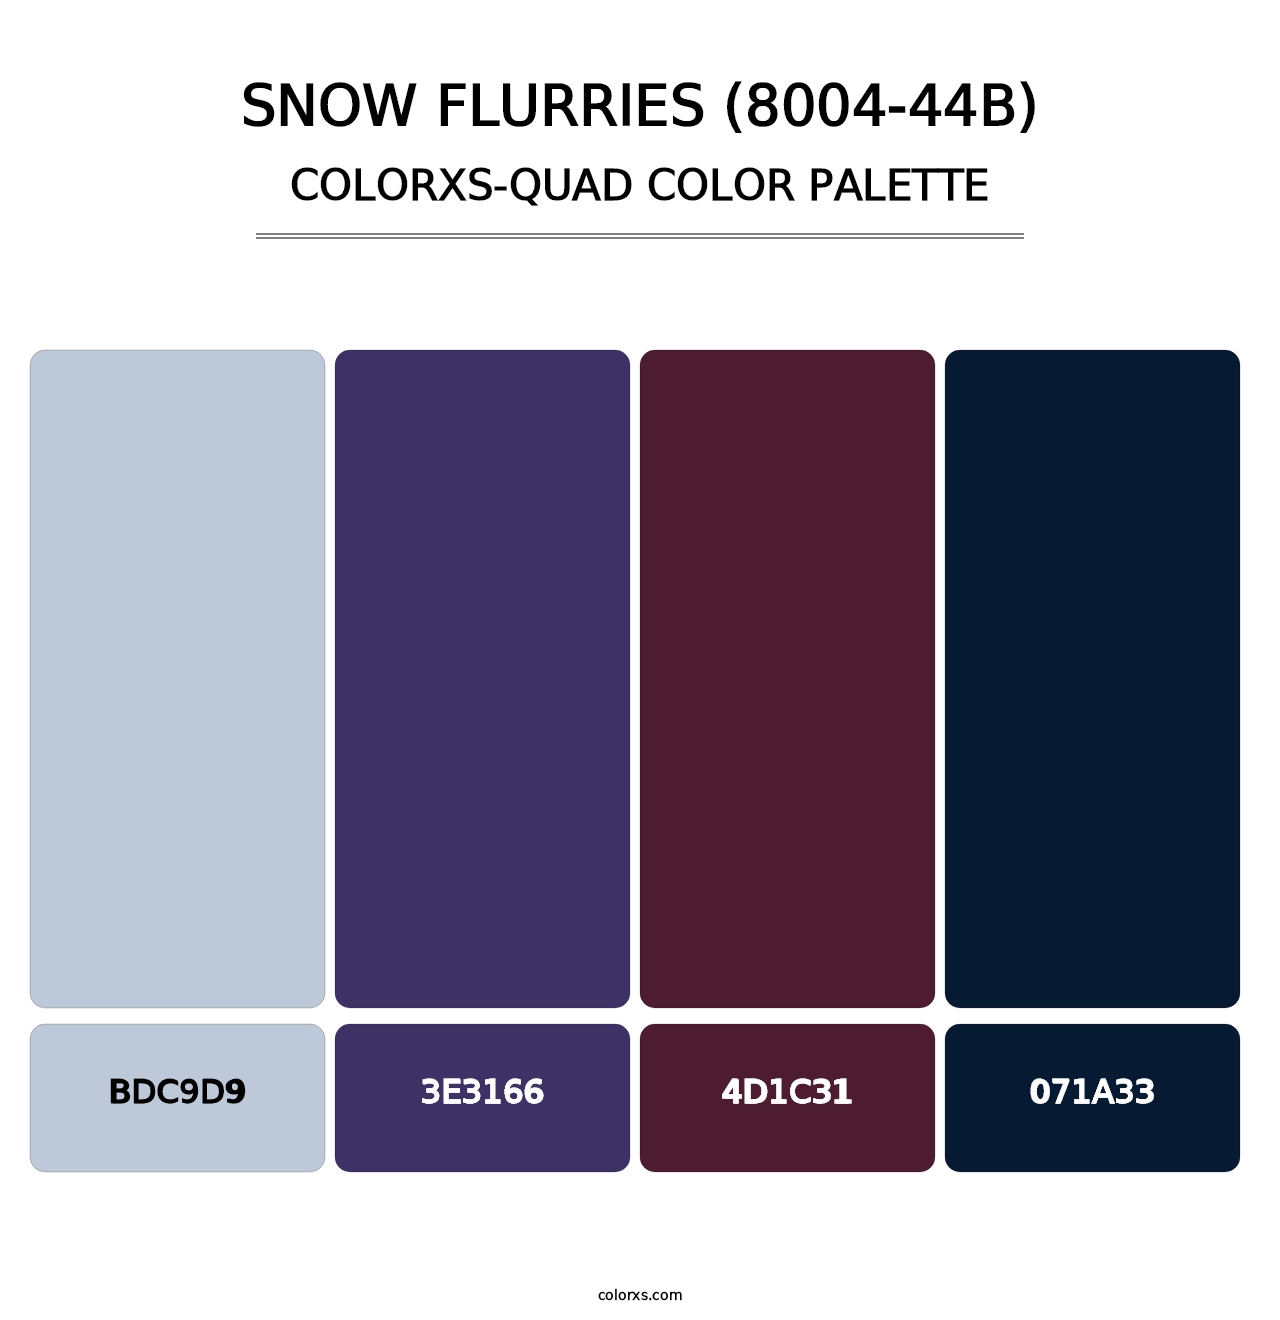 Snow Flurries (8004-44B) - Colorxs Quad Palette